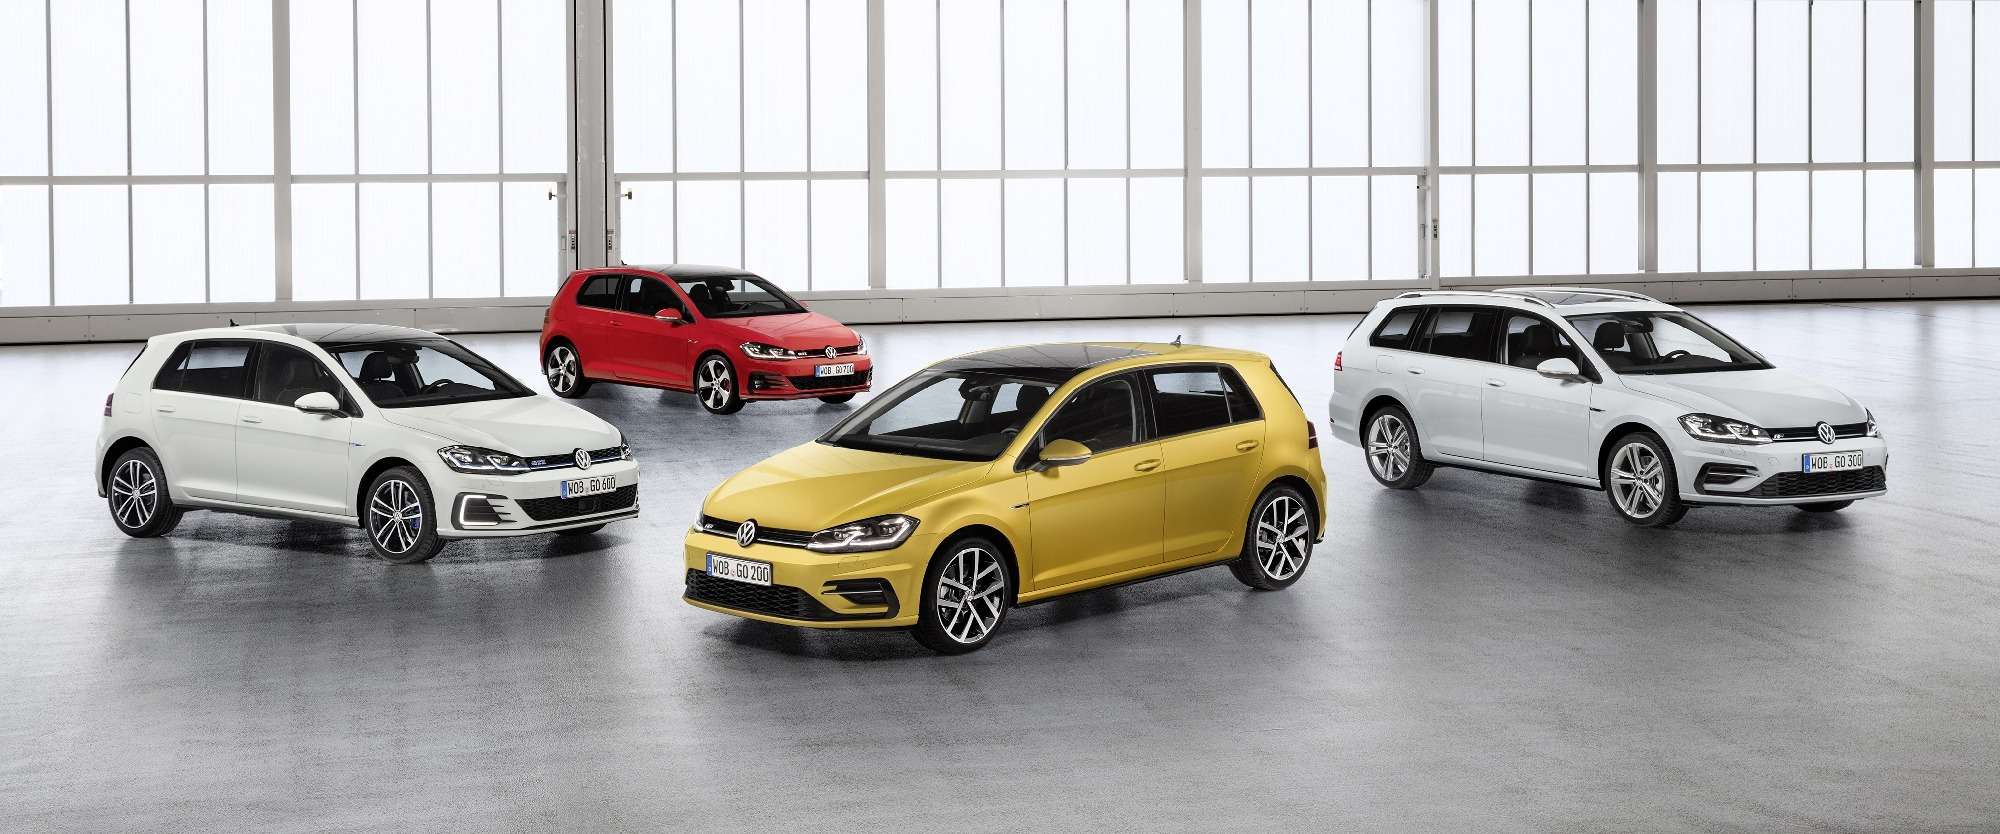 Дальнейшая оцифровка: Volkswagen представил обновленный Golf — фото 661693